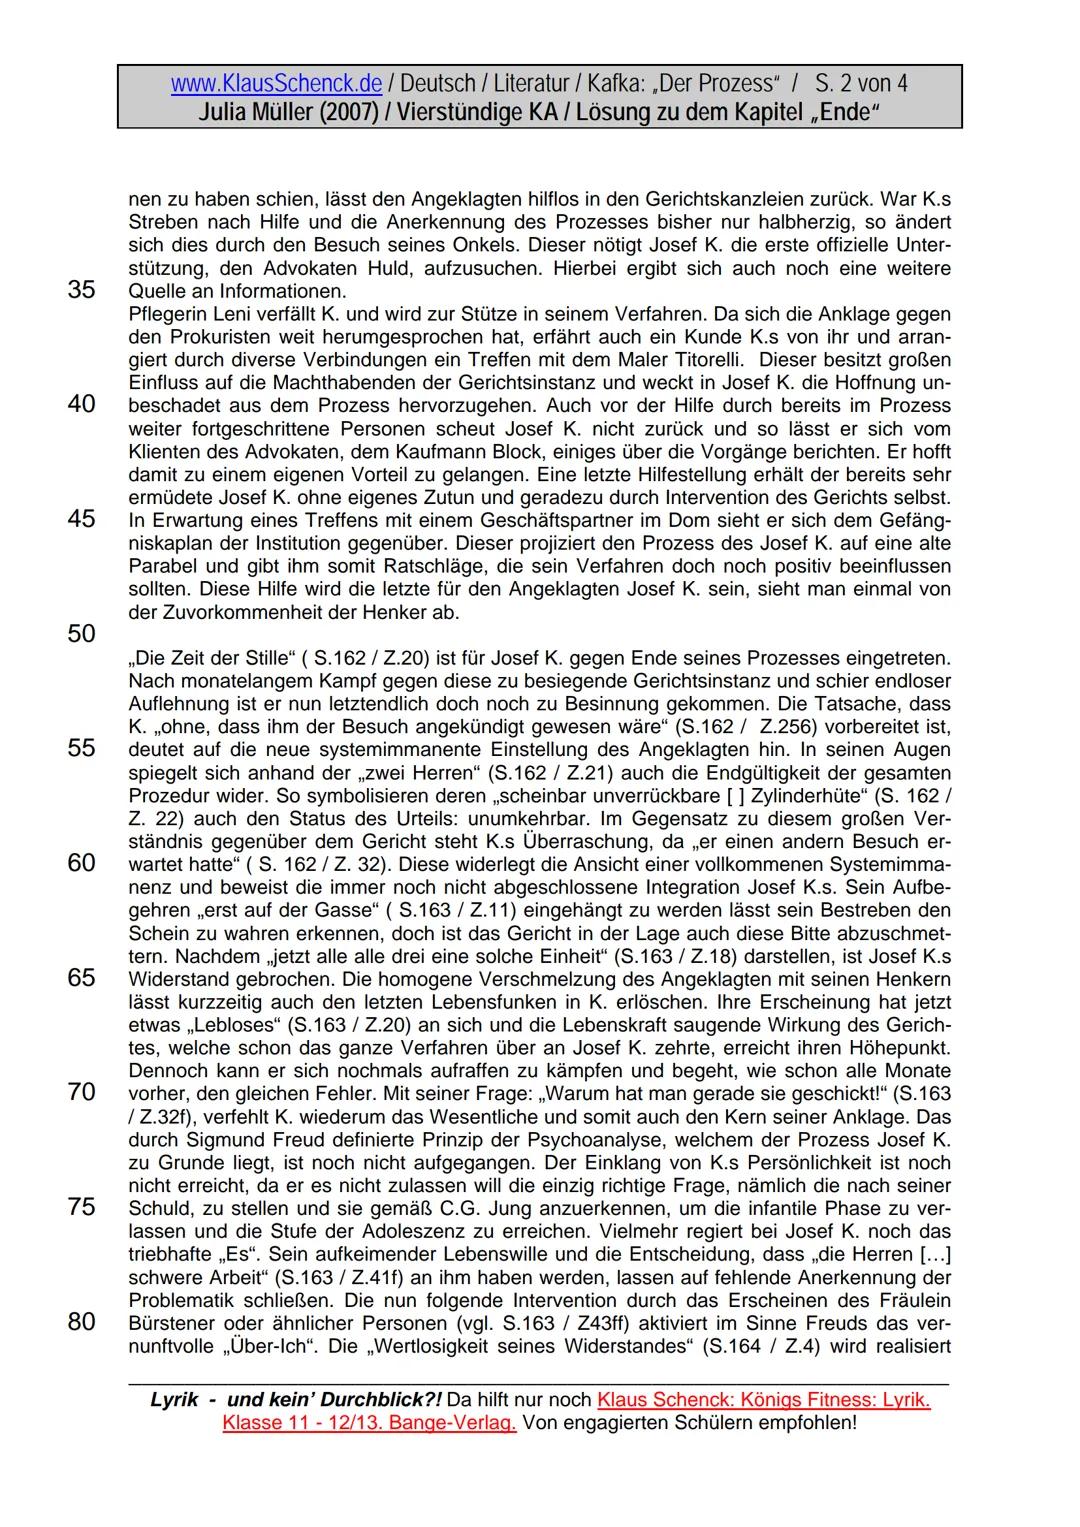 LO
5
10
15
20
25
30
www.KlausSchenck.de / Deutsch / Literatur / Kafka: „Der Prozess" / S. 1 von 4
Julia Müller (2007) / Vierstündige KA / Lö